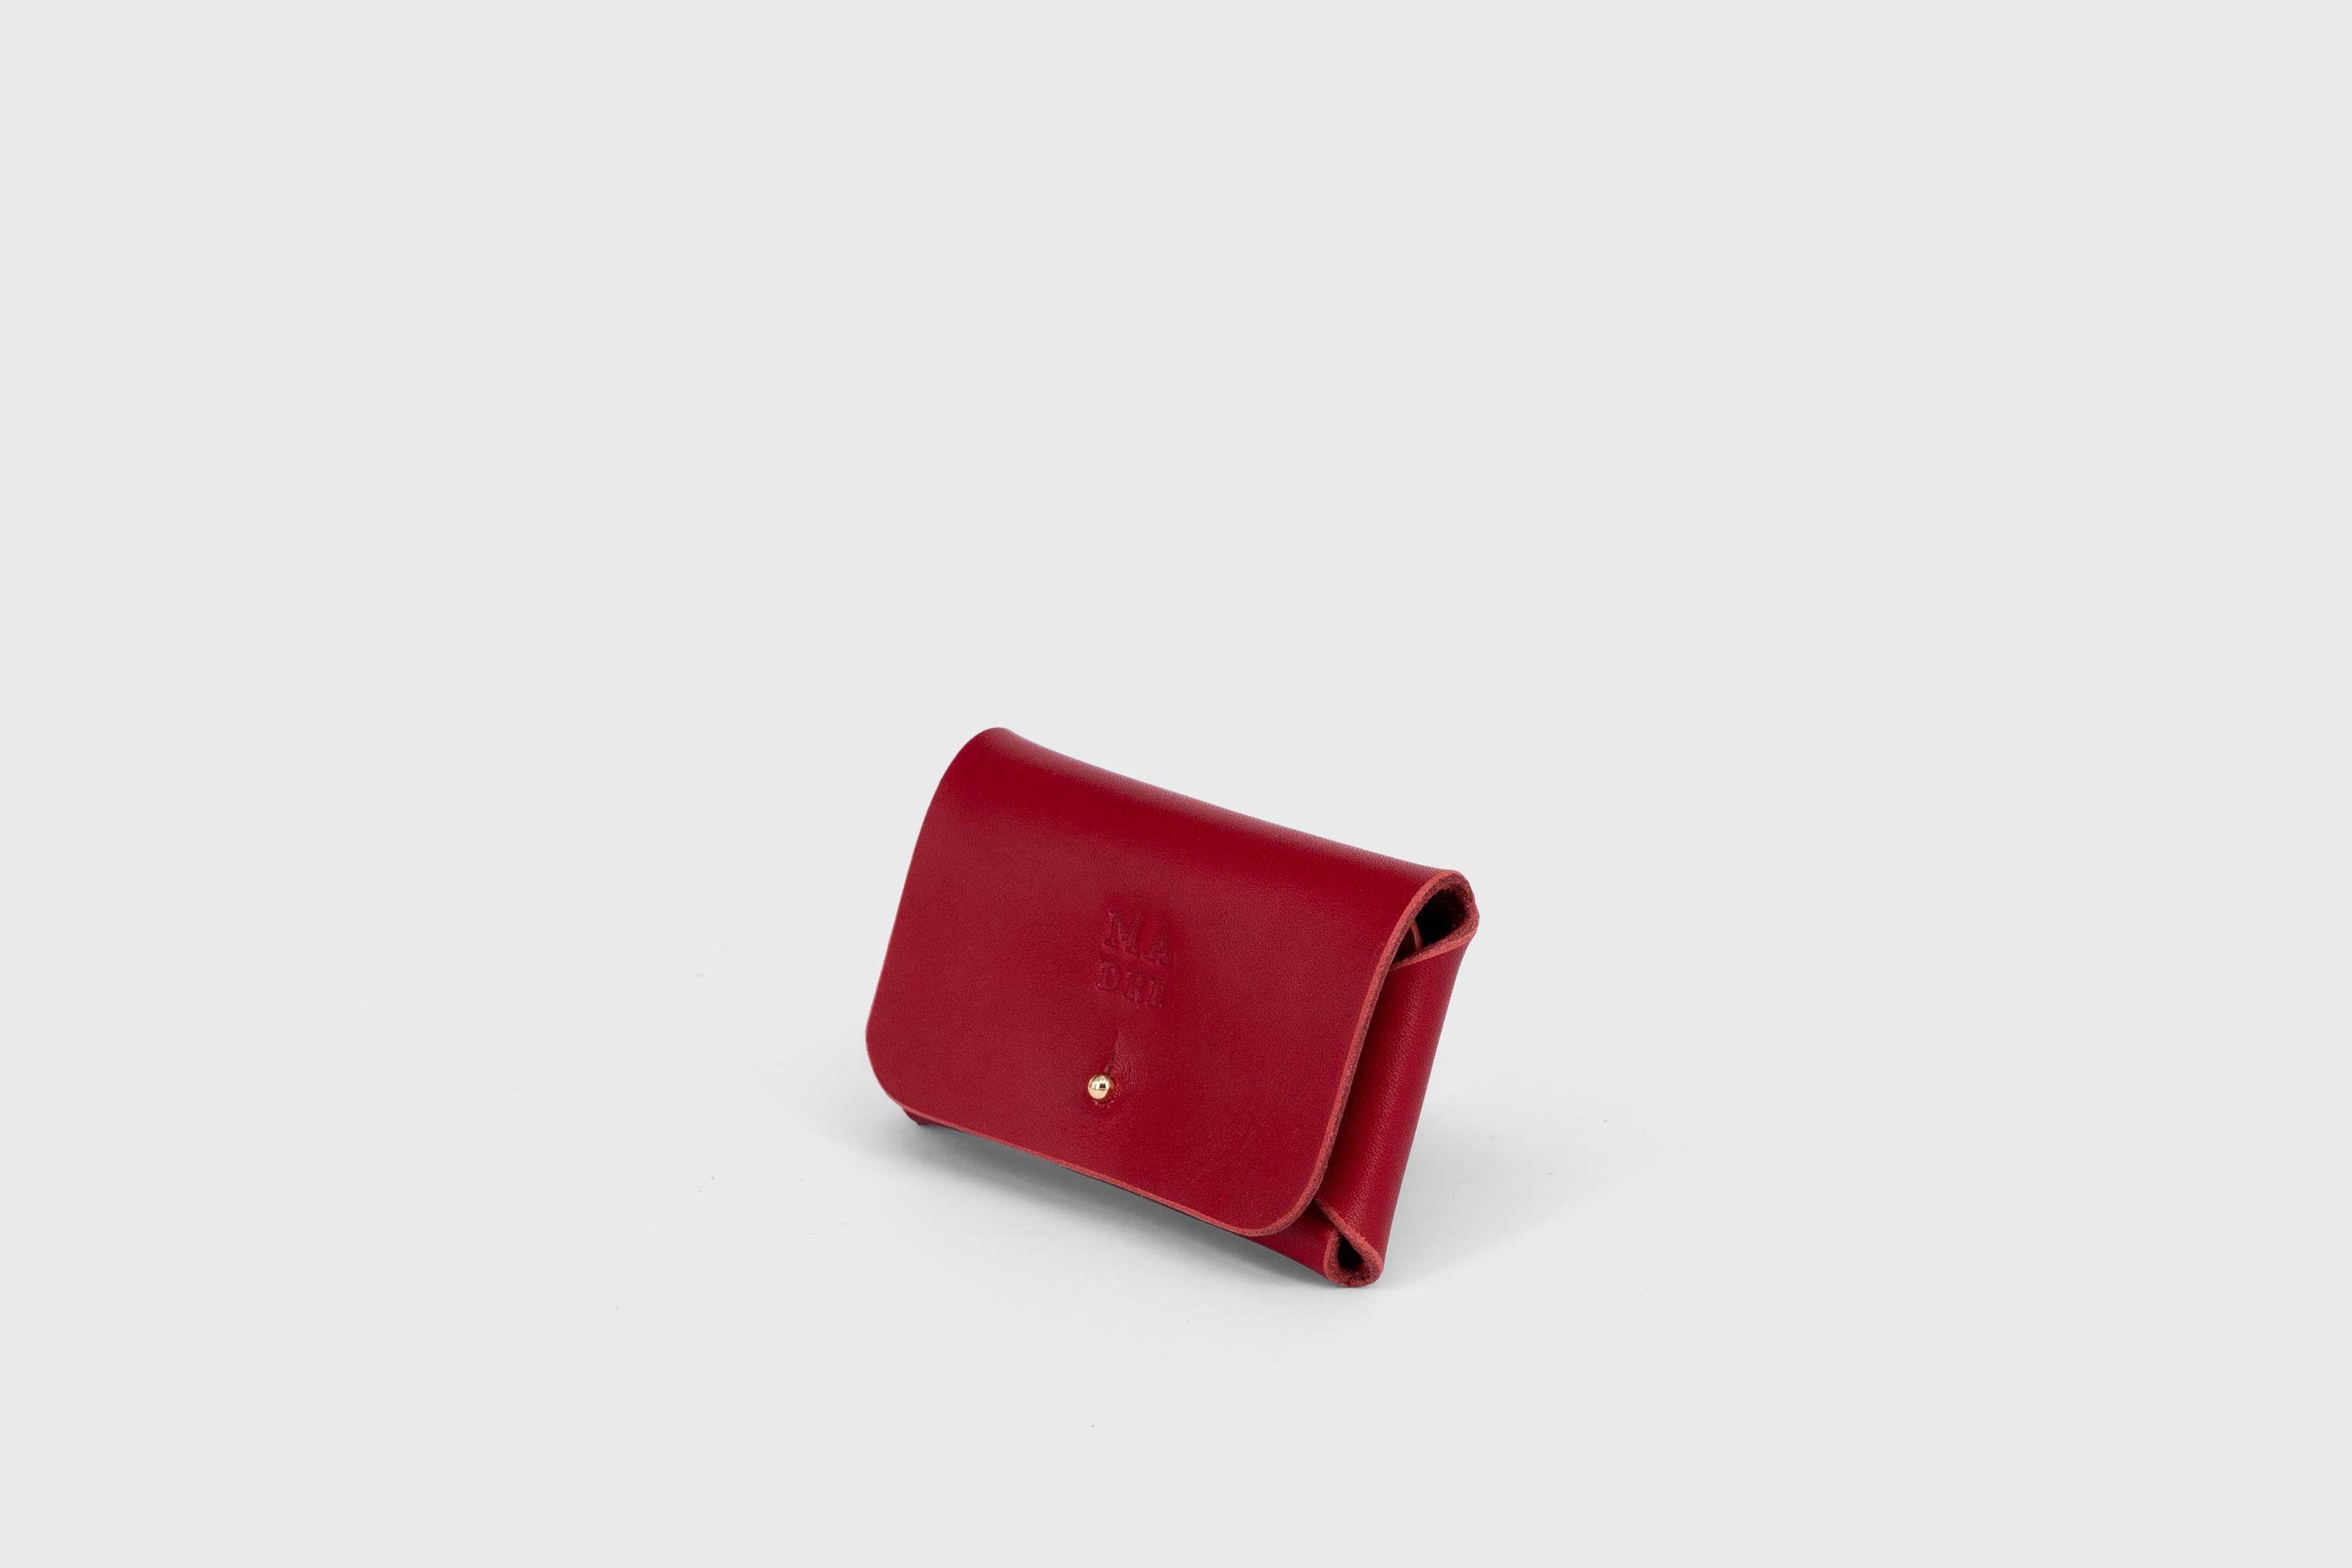 Leather wallet cardholder horizontal design red color minimalist design atelier madre manuel dreesmann barcelona